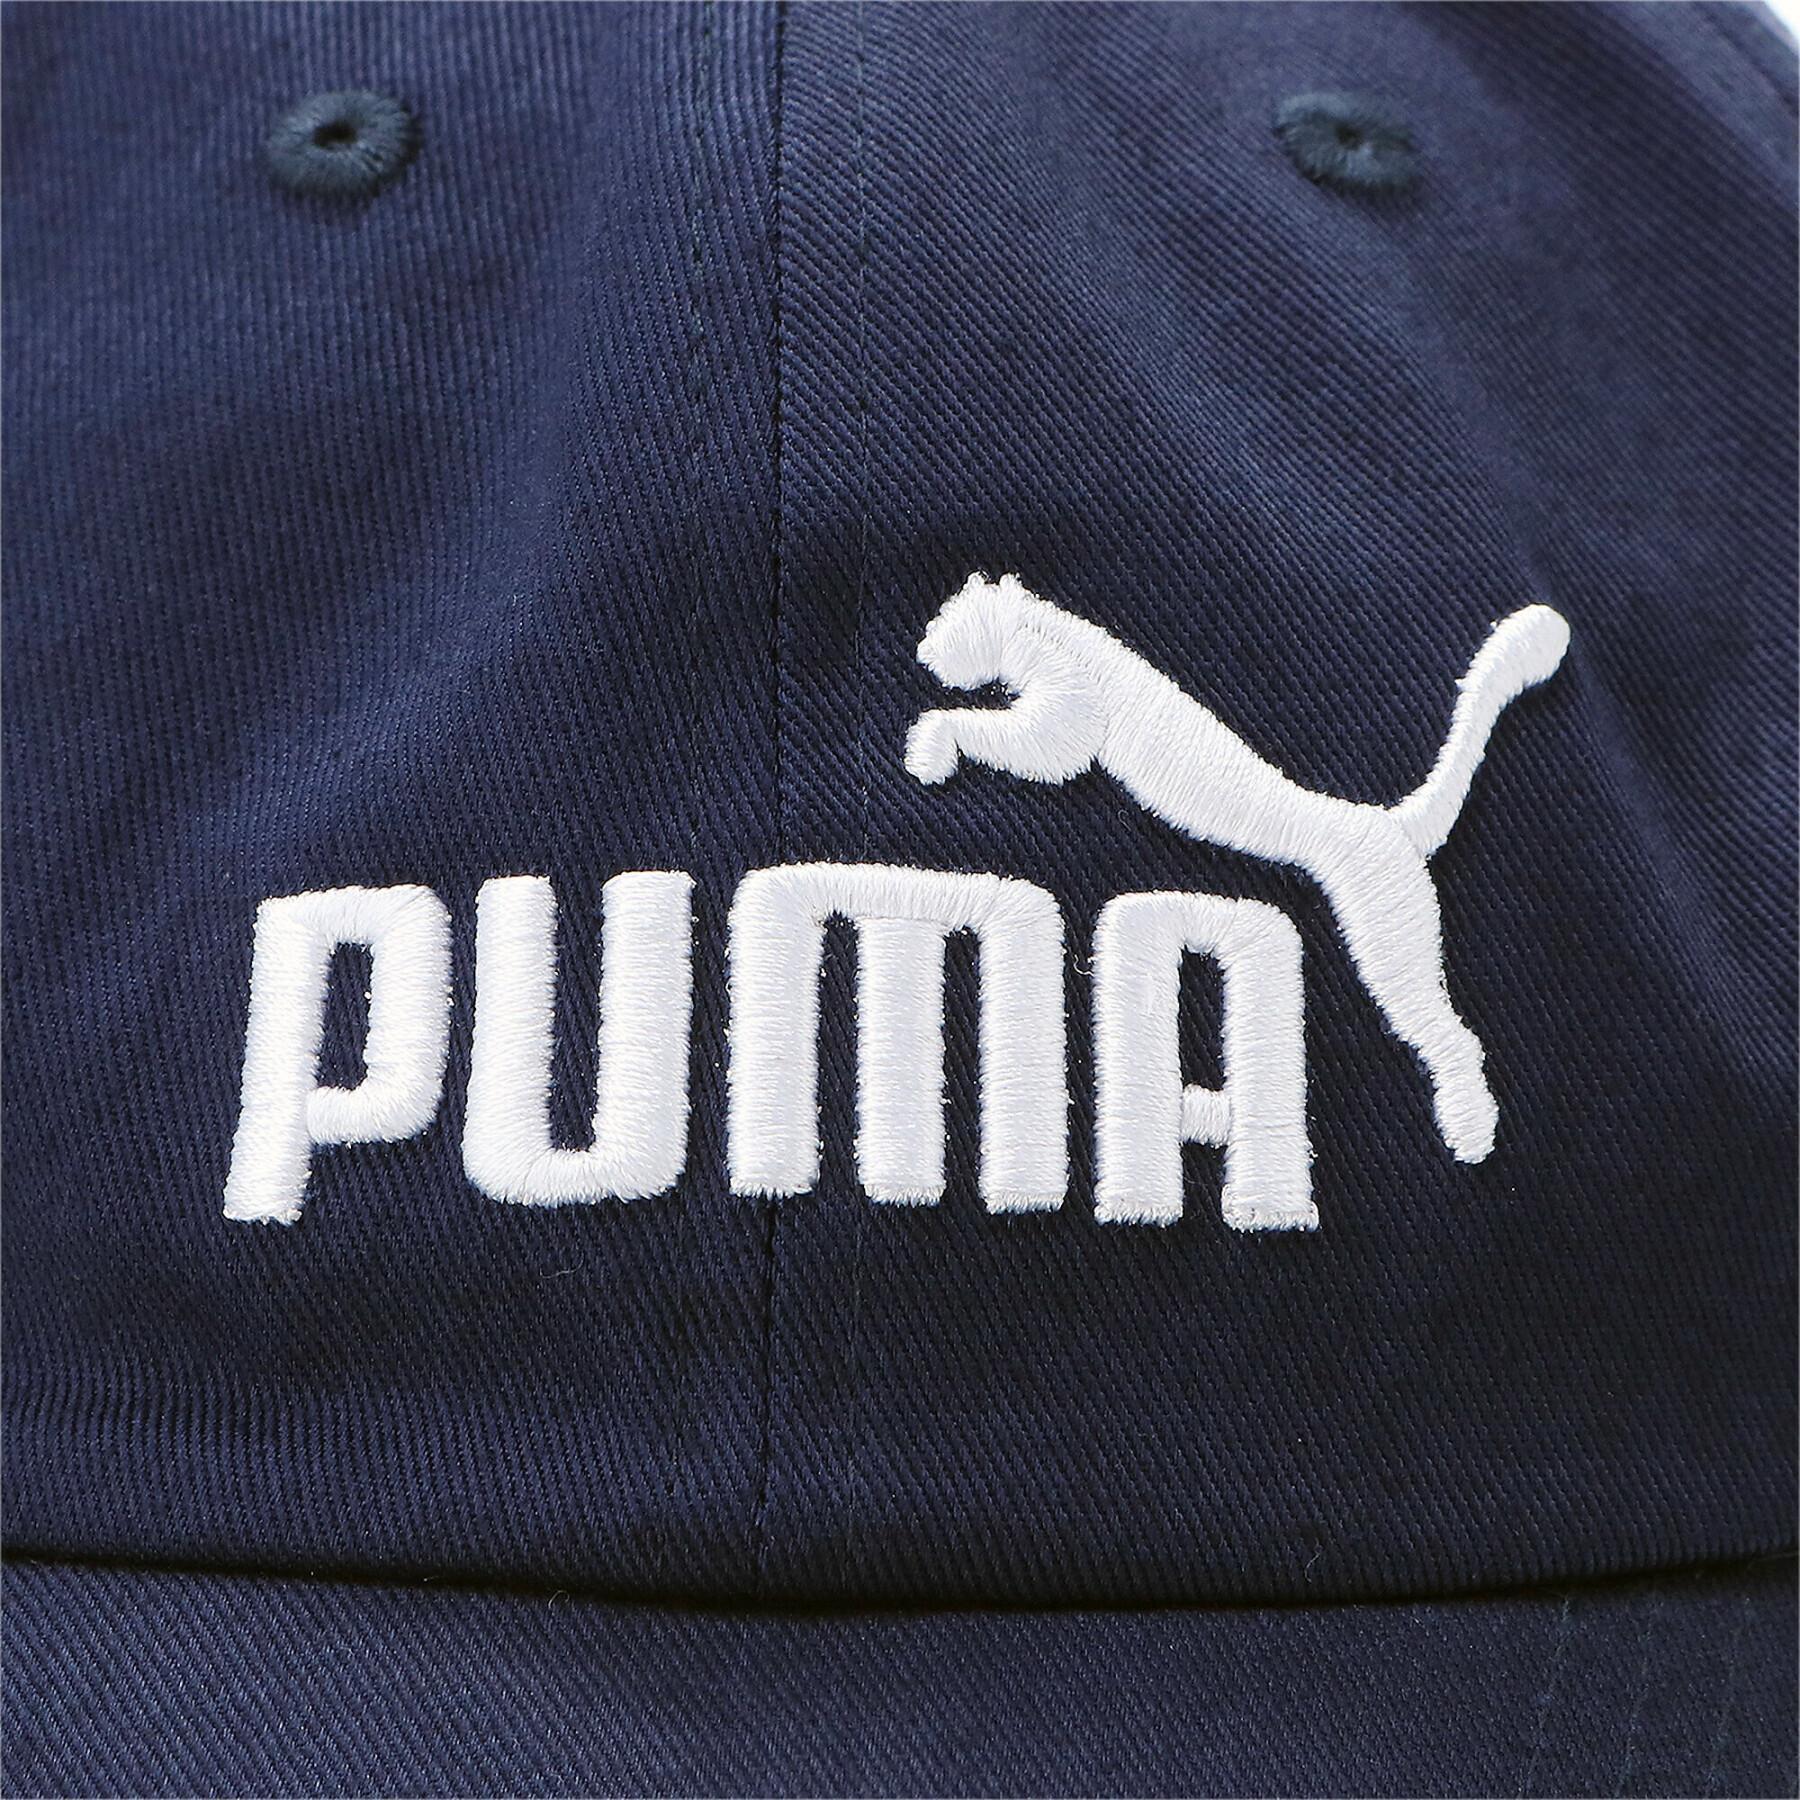 Boné Puma Essentials